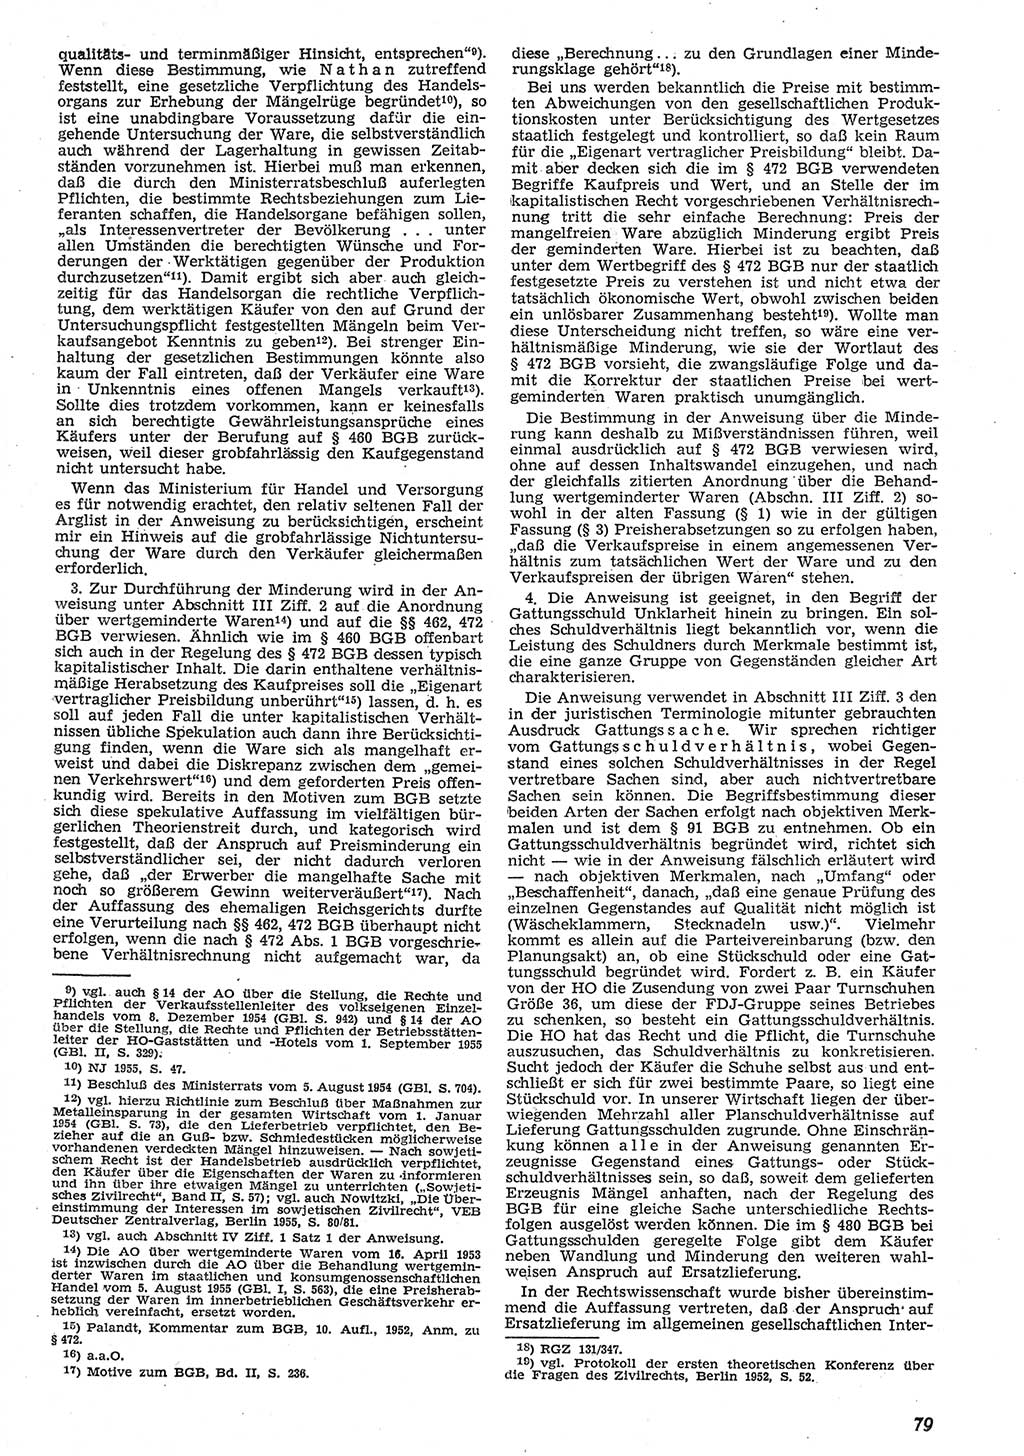 Neue Justiz (NJ), Zeitschrift für Recht und Rechtswissenschaft [Deutsche Demokratische Republik (DDR)], 10. Jahrgang 1956, Seite 79 (NJ DDR 1956, S. 79)